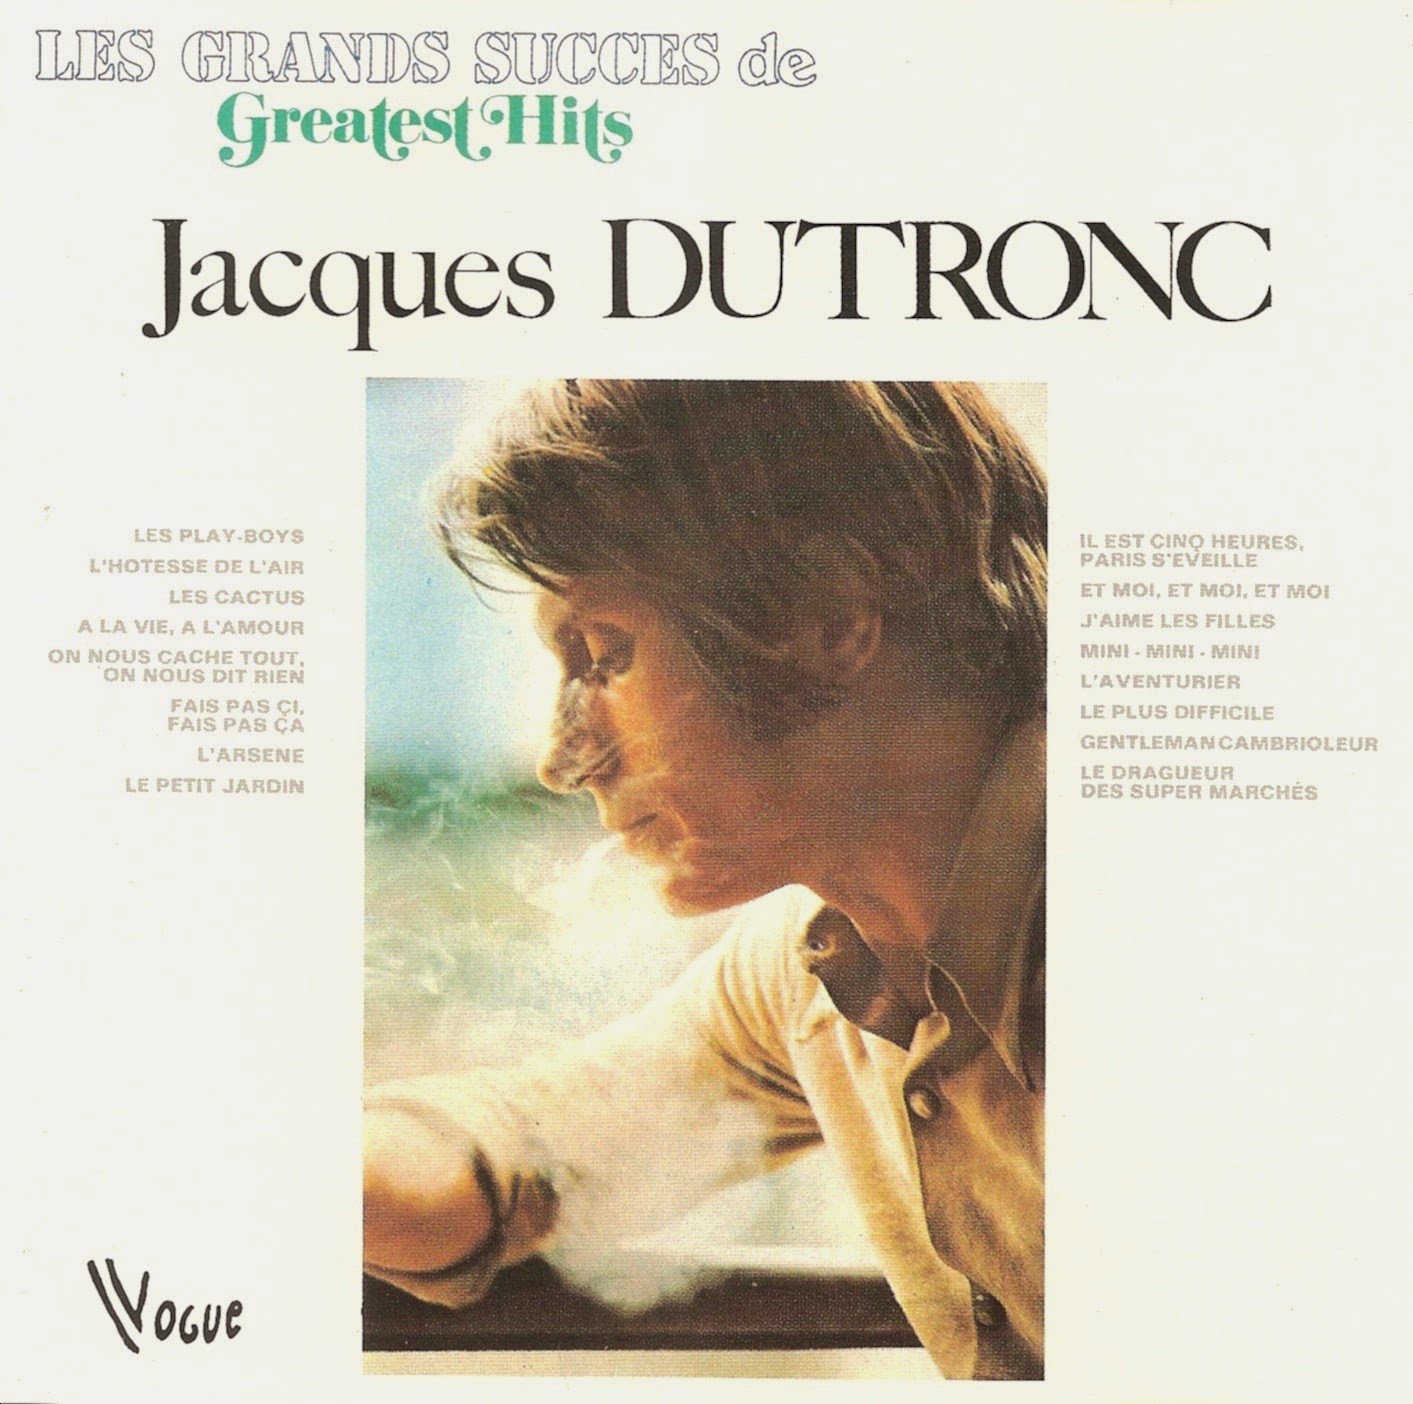 Jacques Dutronc-Best Of Jacques Dutronc (Cd1) Full Album Zip